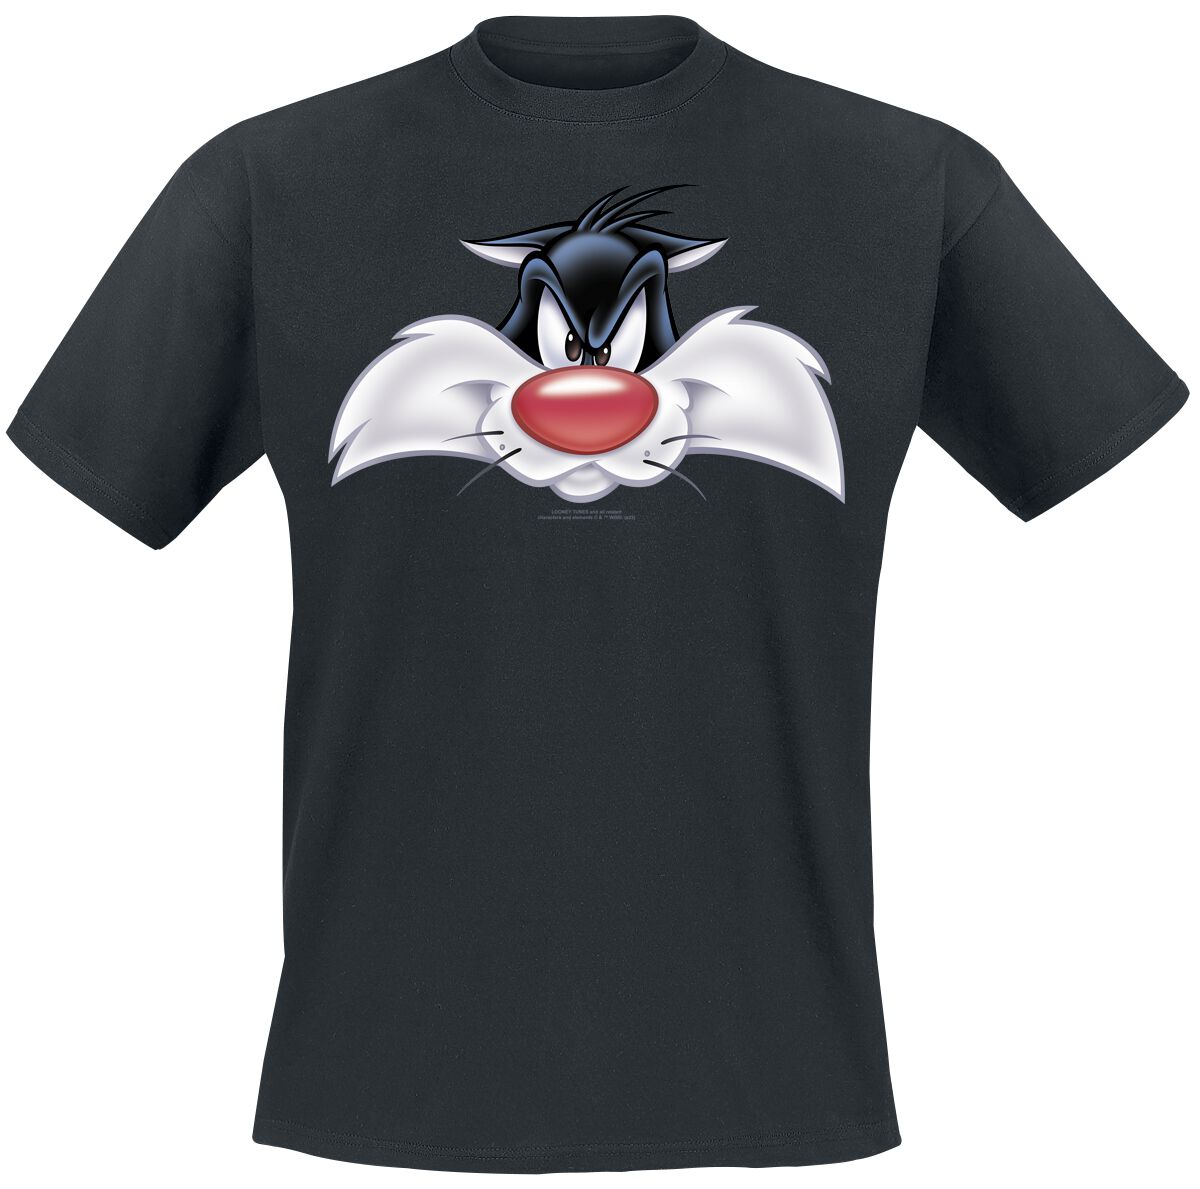 Looney Tunes T-Shirt - Sylvester - Big Face - XL bis 4XL - für Männer - Größe XL - schwarz  - Lizenzierter Fanartikel